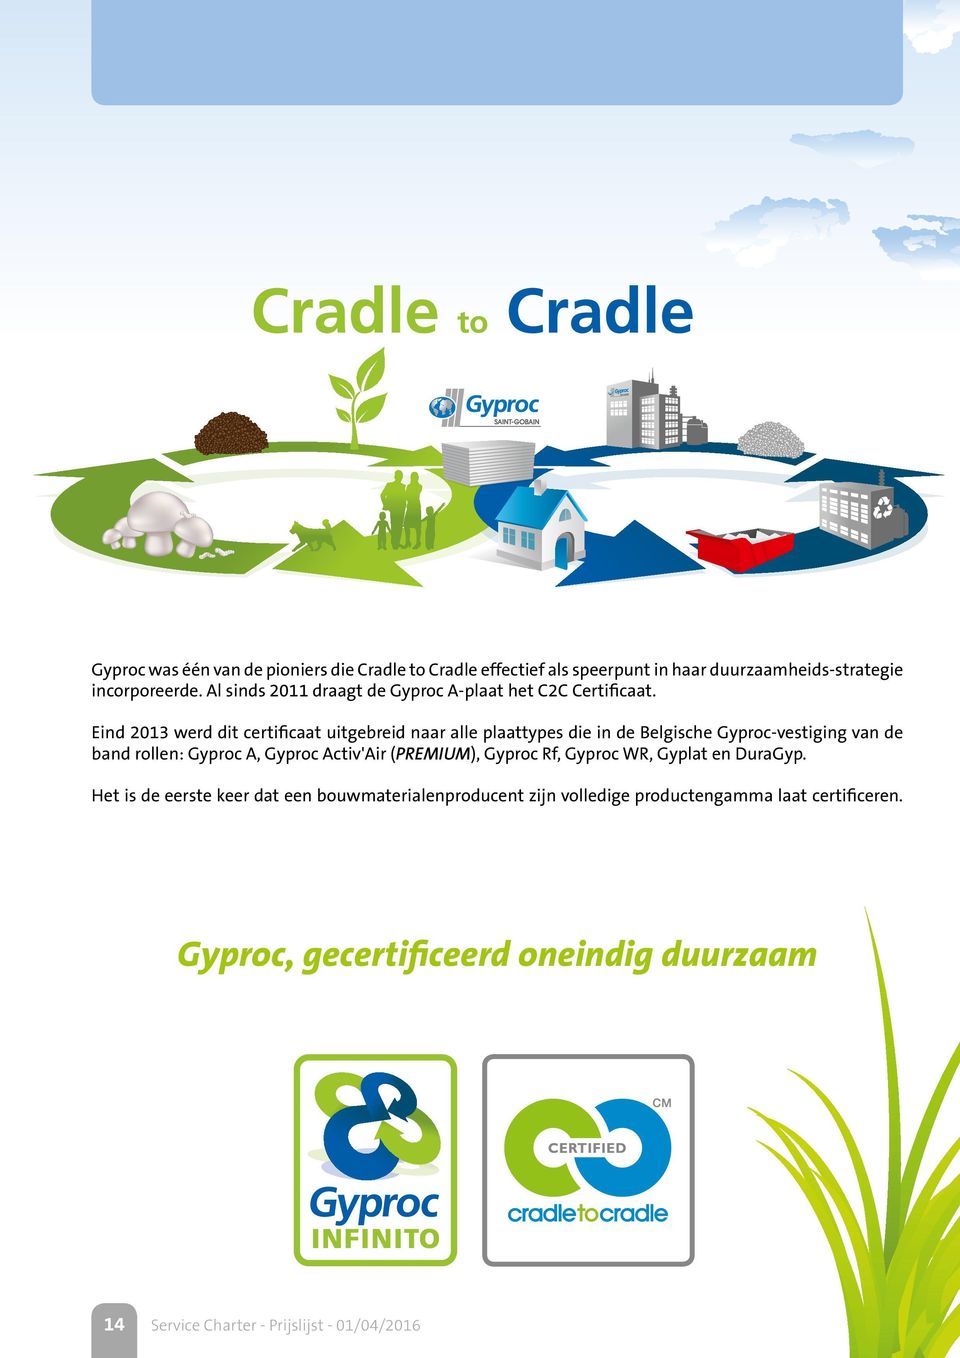 Eind 2013 werd dit certificaat uitgebreid naar alle plaattypes die in de Belgische Gyproc-vestiging van de band rollen: Gyproc A, Gyproc